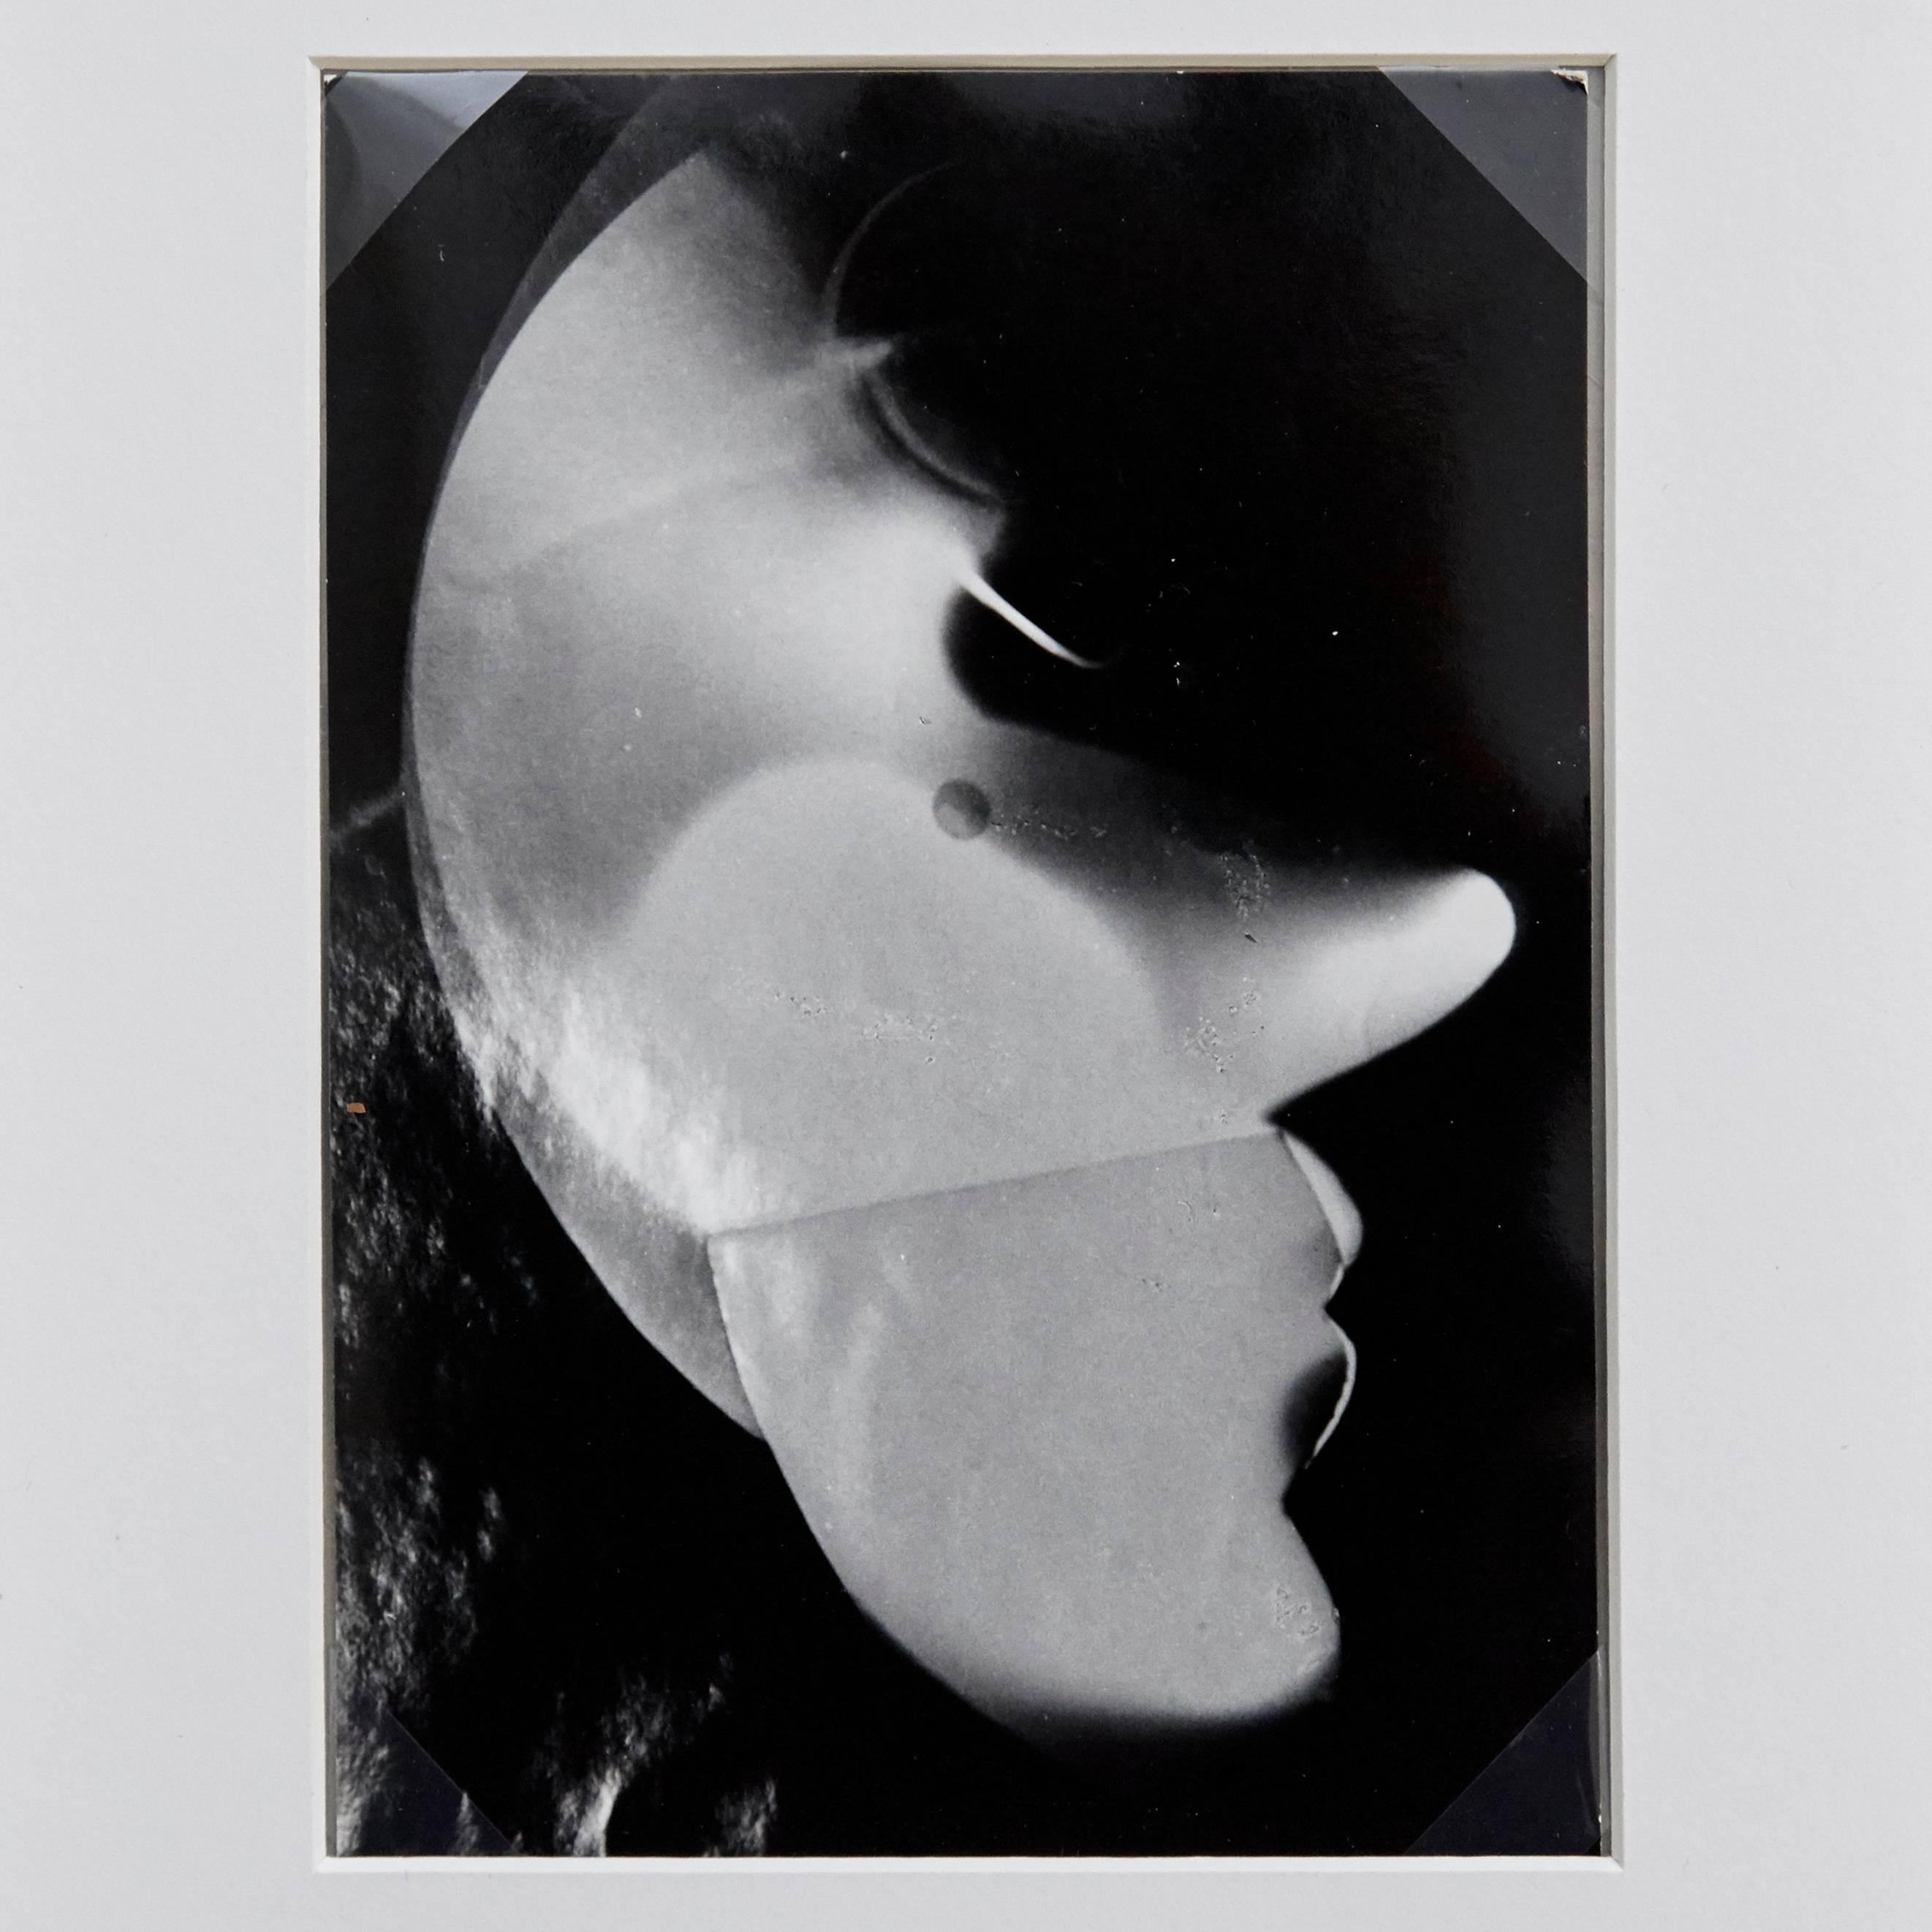 Self-Portrait de László Moholy-Nagy, 1926.

Tirage posthume à partir du négatif original, vers 1972.
Estampillé par Foto Moholy-Nagy et la Galerie Khlim.

En bon état d'origine.

László Moholy-Nagy (1895-1946) était un peintre et un